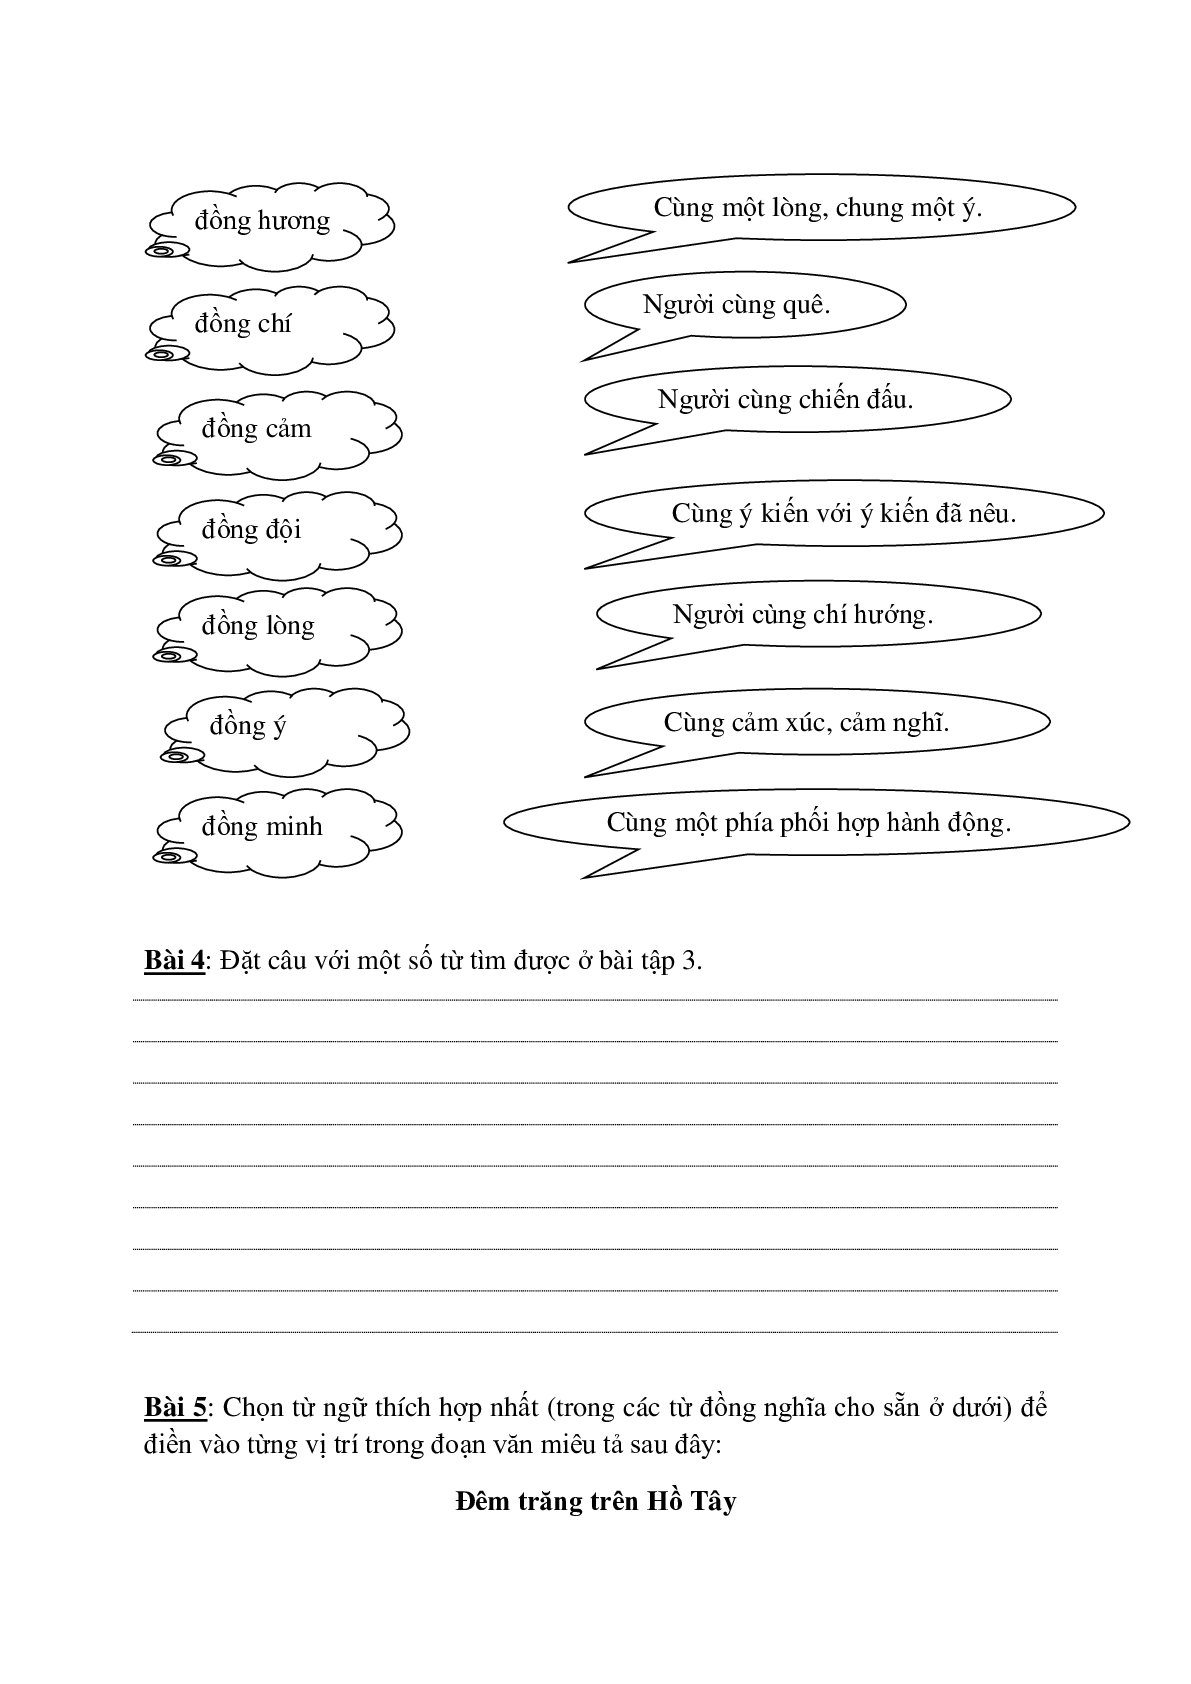 Bài tập nâng cao môn Tiếng Việt lớp 5 (trang 8)